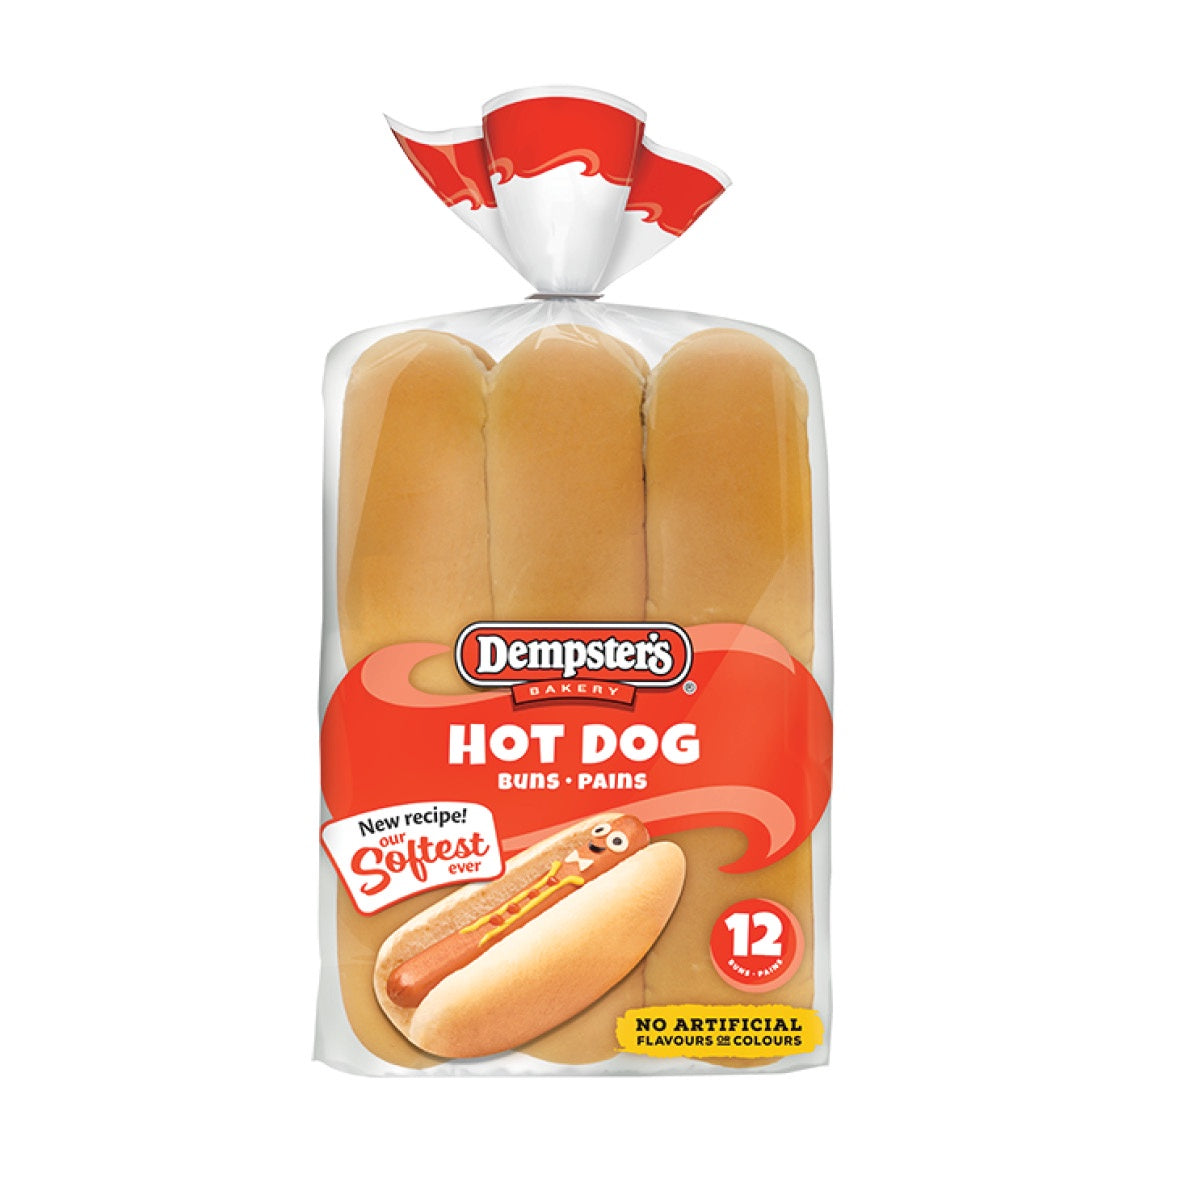 Dempster's Buns Original Hot Dog, 12pk